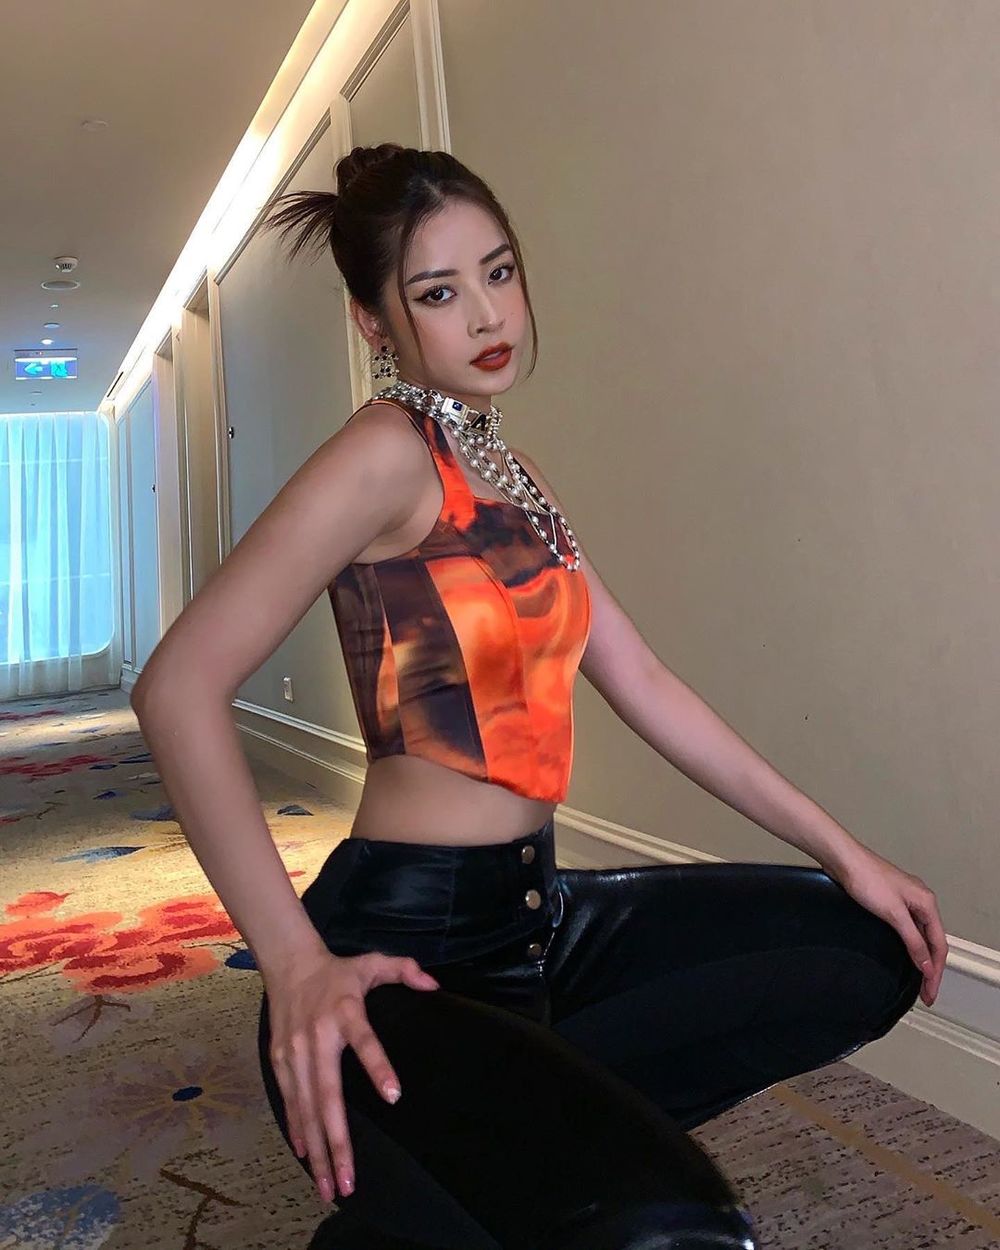  
Cô nàng diện mẫu áo tông cam với phần họa tiết loang lổ, đi cùng quần jean cạp cao. (Ảnh: Instagram nhân vật)